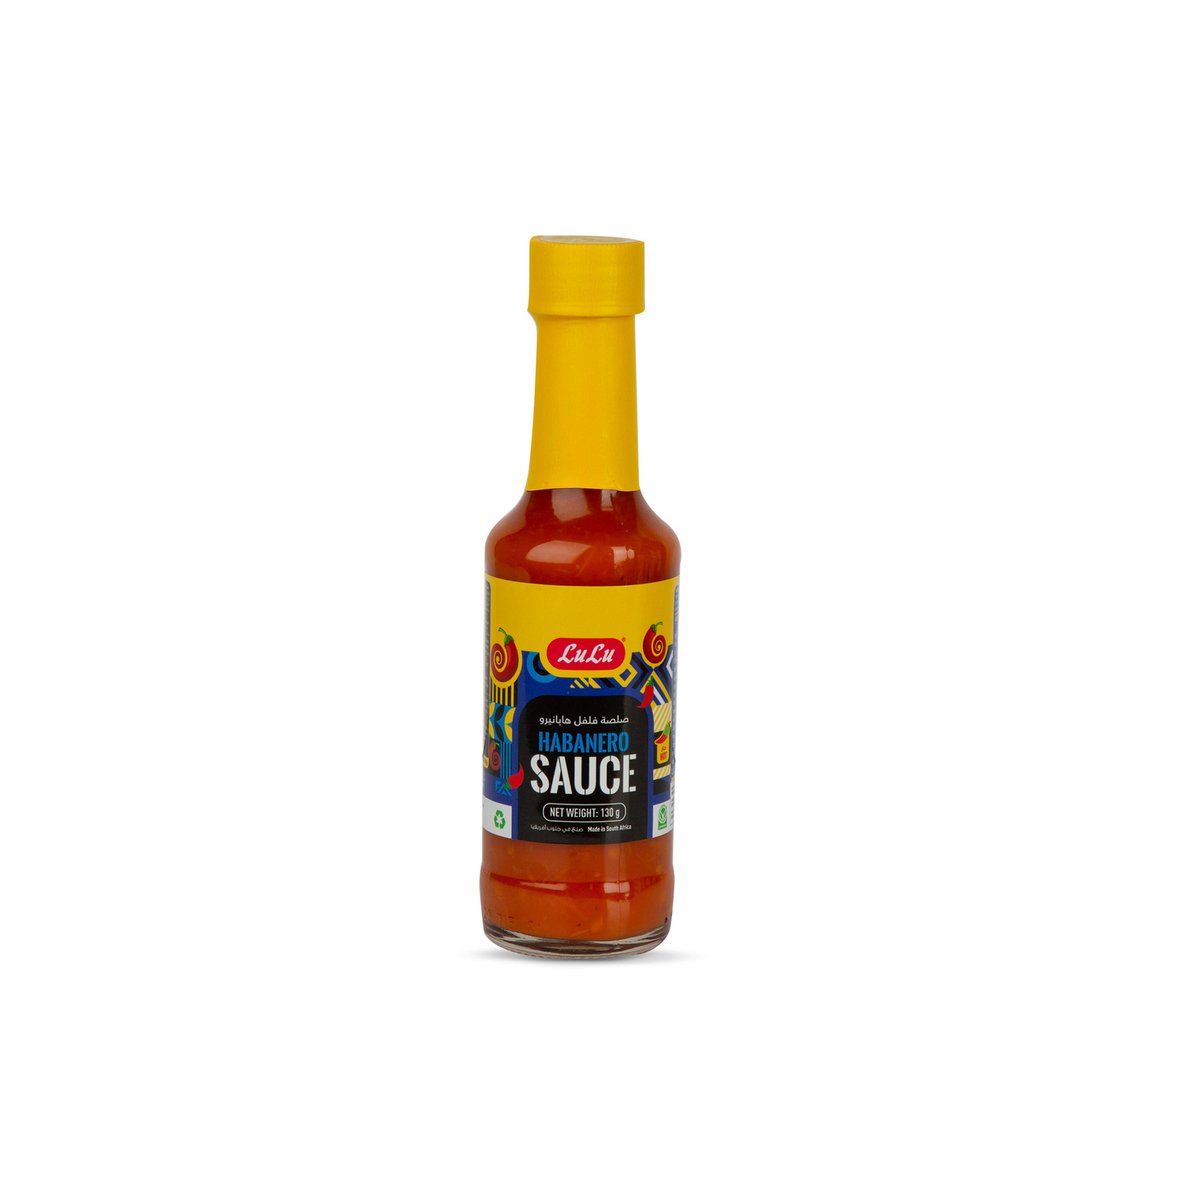 Lulu Habanero Sauce 130g